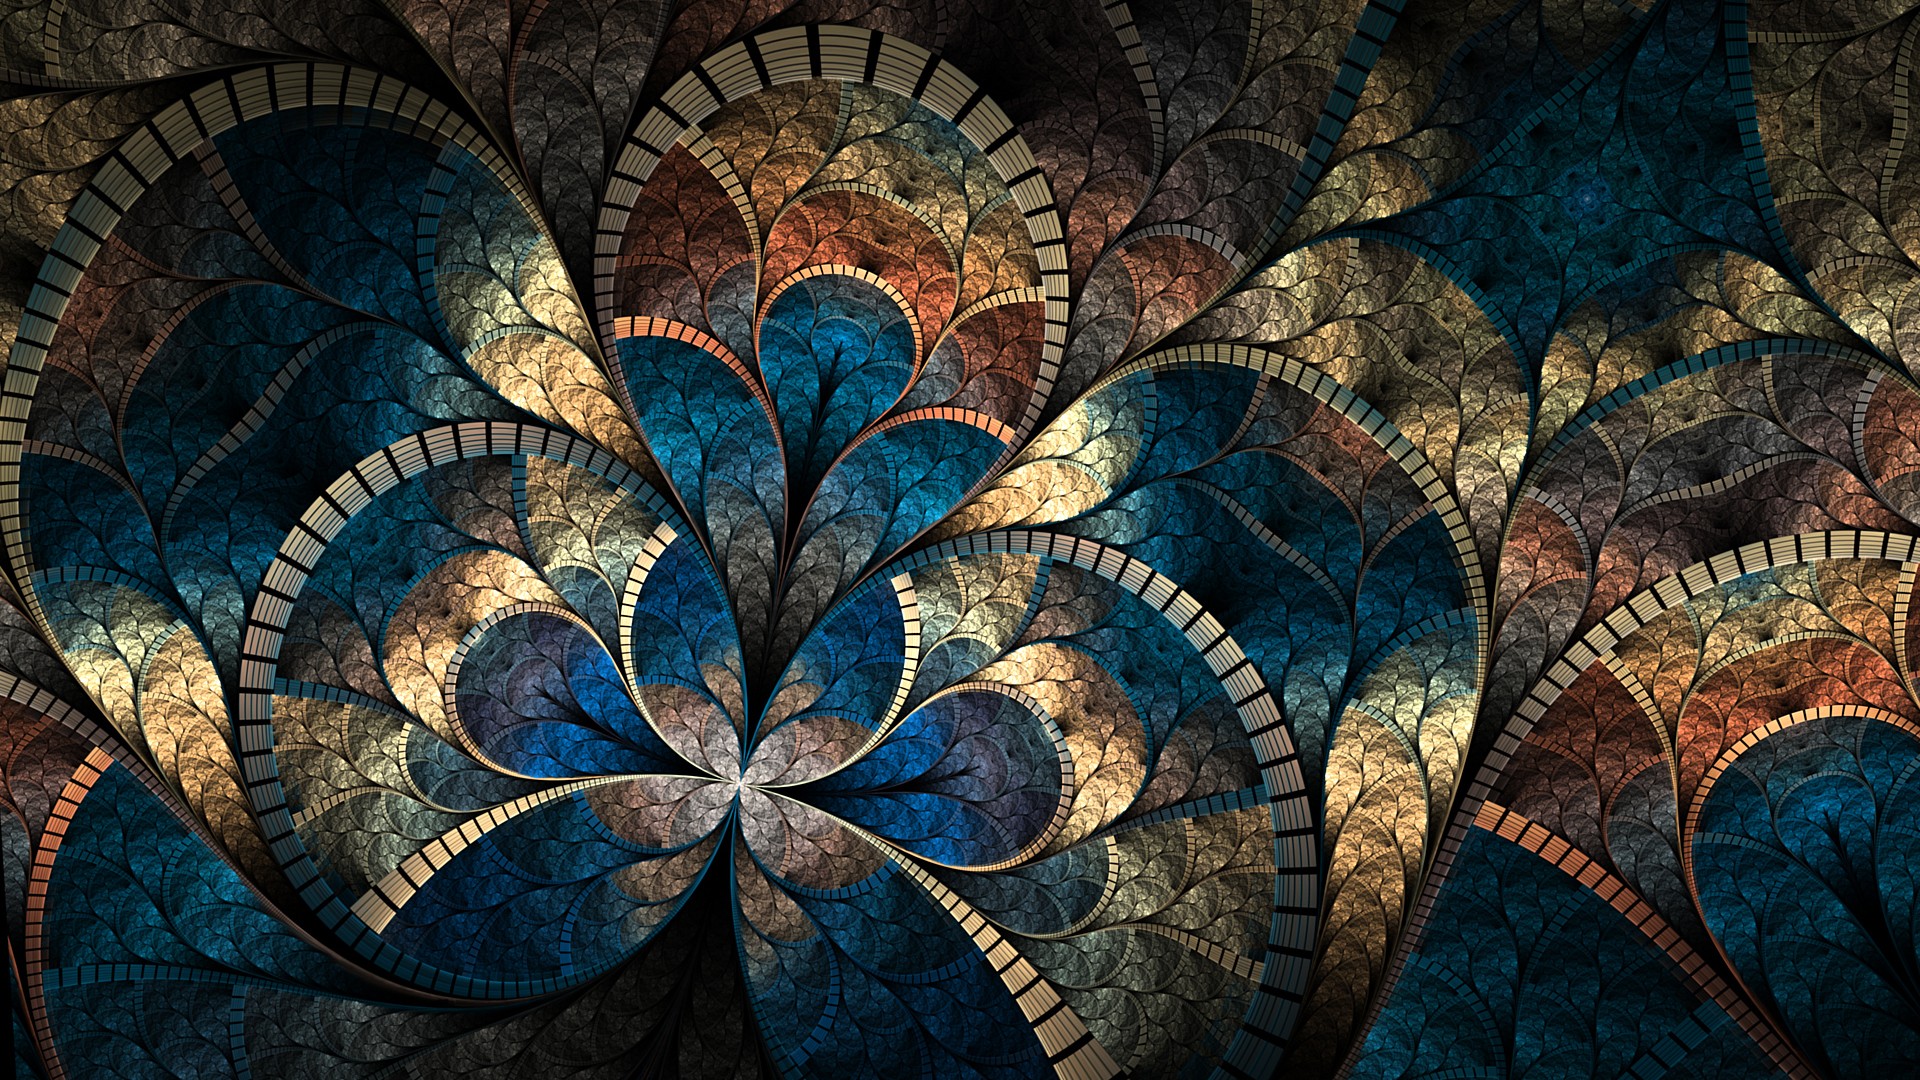 Abstract Wallpaper Mosaic Image